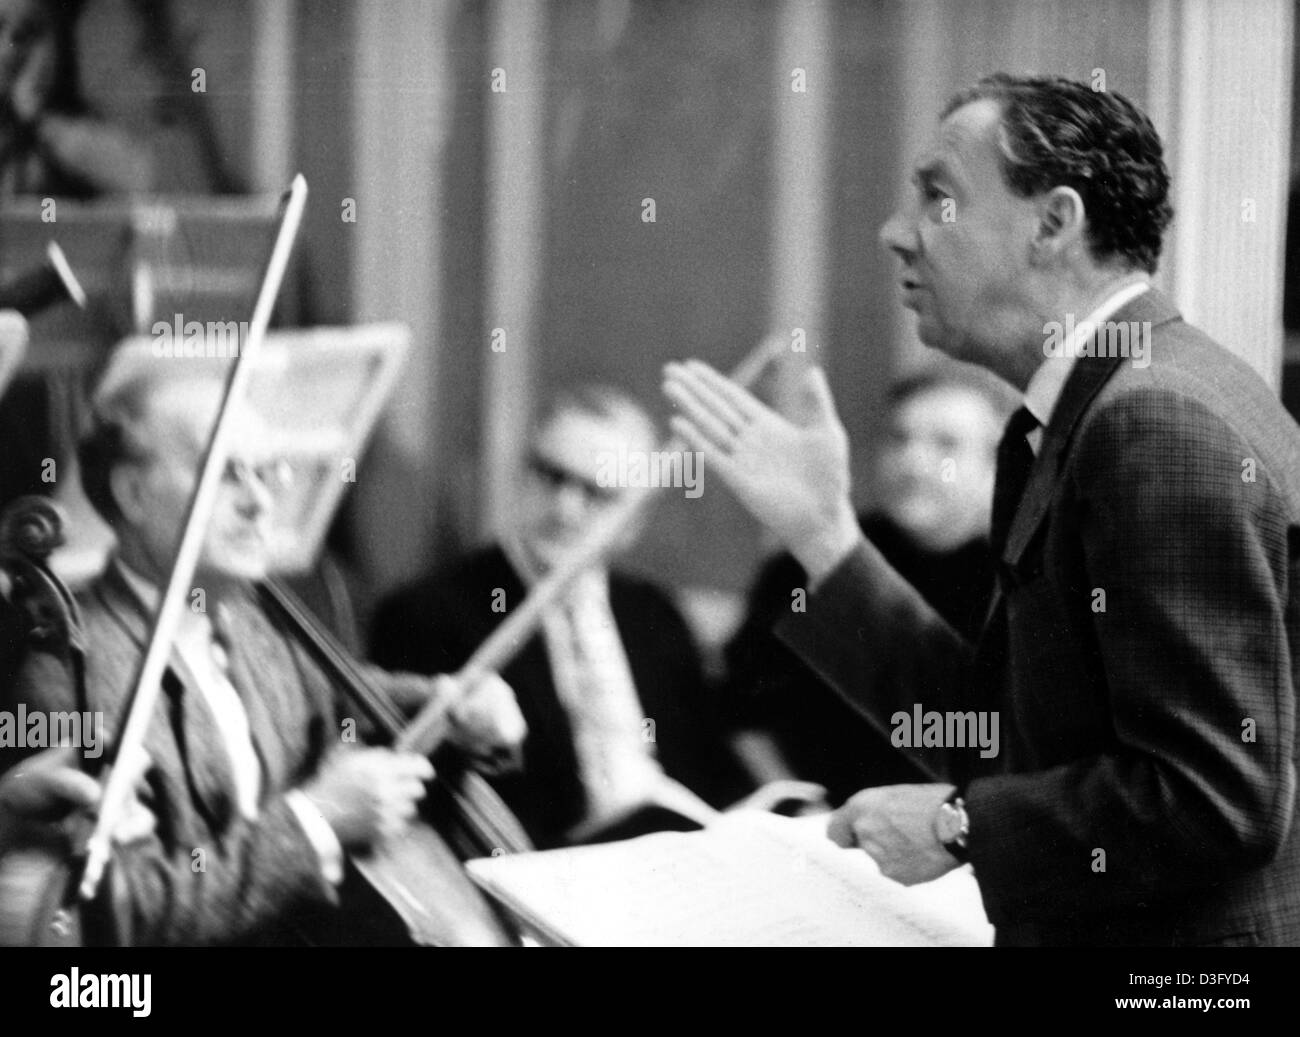 (Dpa-Dateien) - beschreibt, britischer Komponist Benjamin Britten (R) während einer Probe mit dem Kammerorchester der ostdeutschen Staatsoper für die Leistung "War Requiem" in Ost-Berlin, DDR, 5. Januar 1968. Er studierte Klavier bei Harold Samuel und Komposition bei Frank Bridge. Er erhielt ein Stipendium an der Royal College of Music, wo er Unde arbeitete Stockfoto